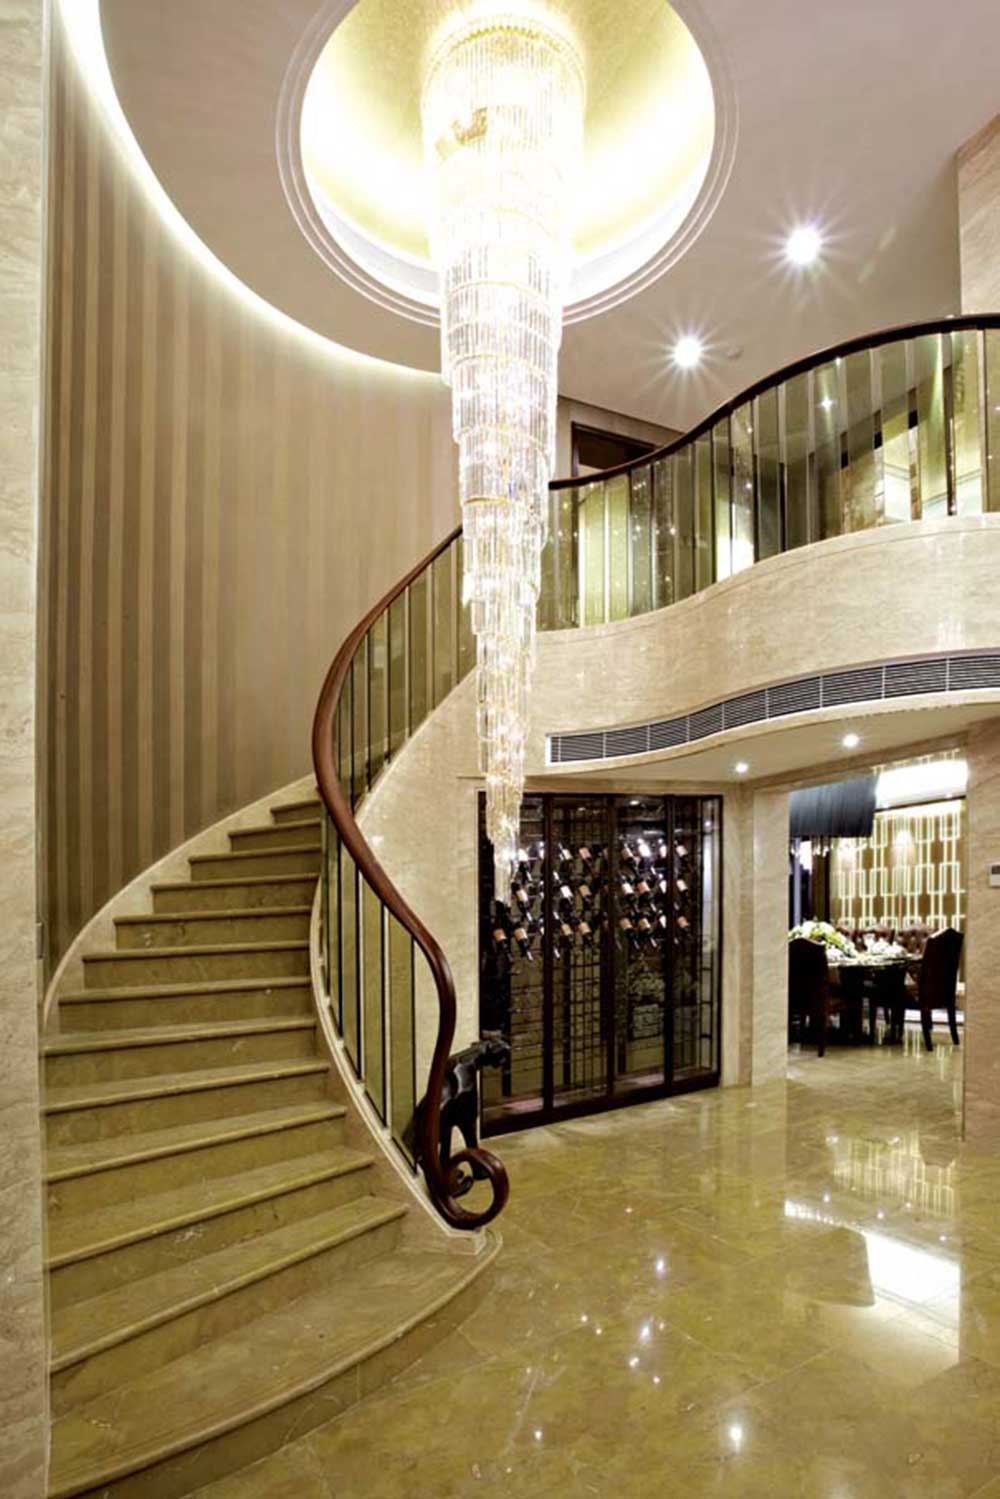 楼梯蜿蜒通向二楼，流线型木质扶手给人温柔的感觉，垂坠的大型水晶灯则给人闪耀的美感。